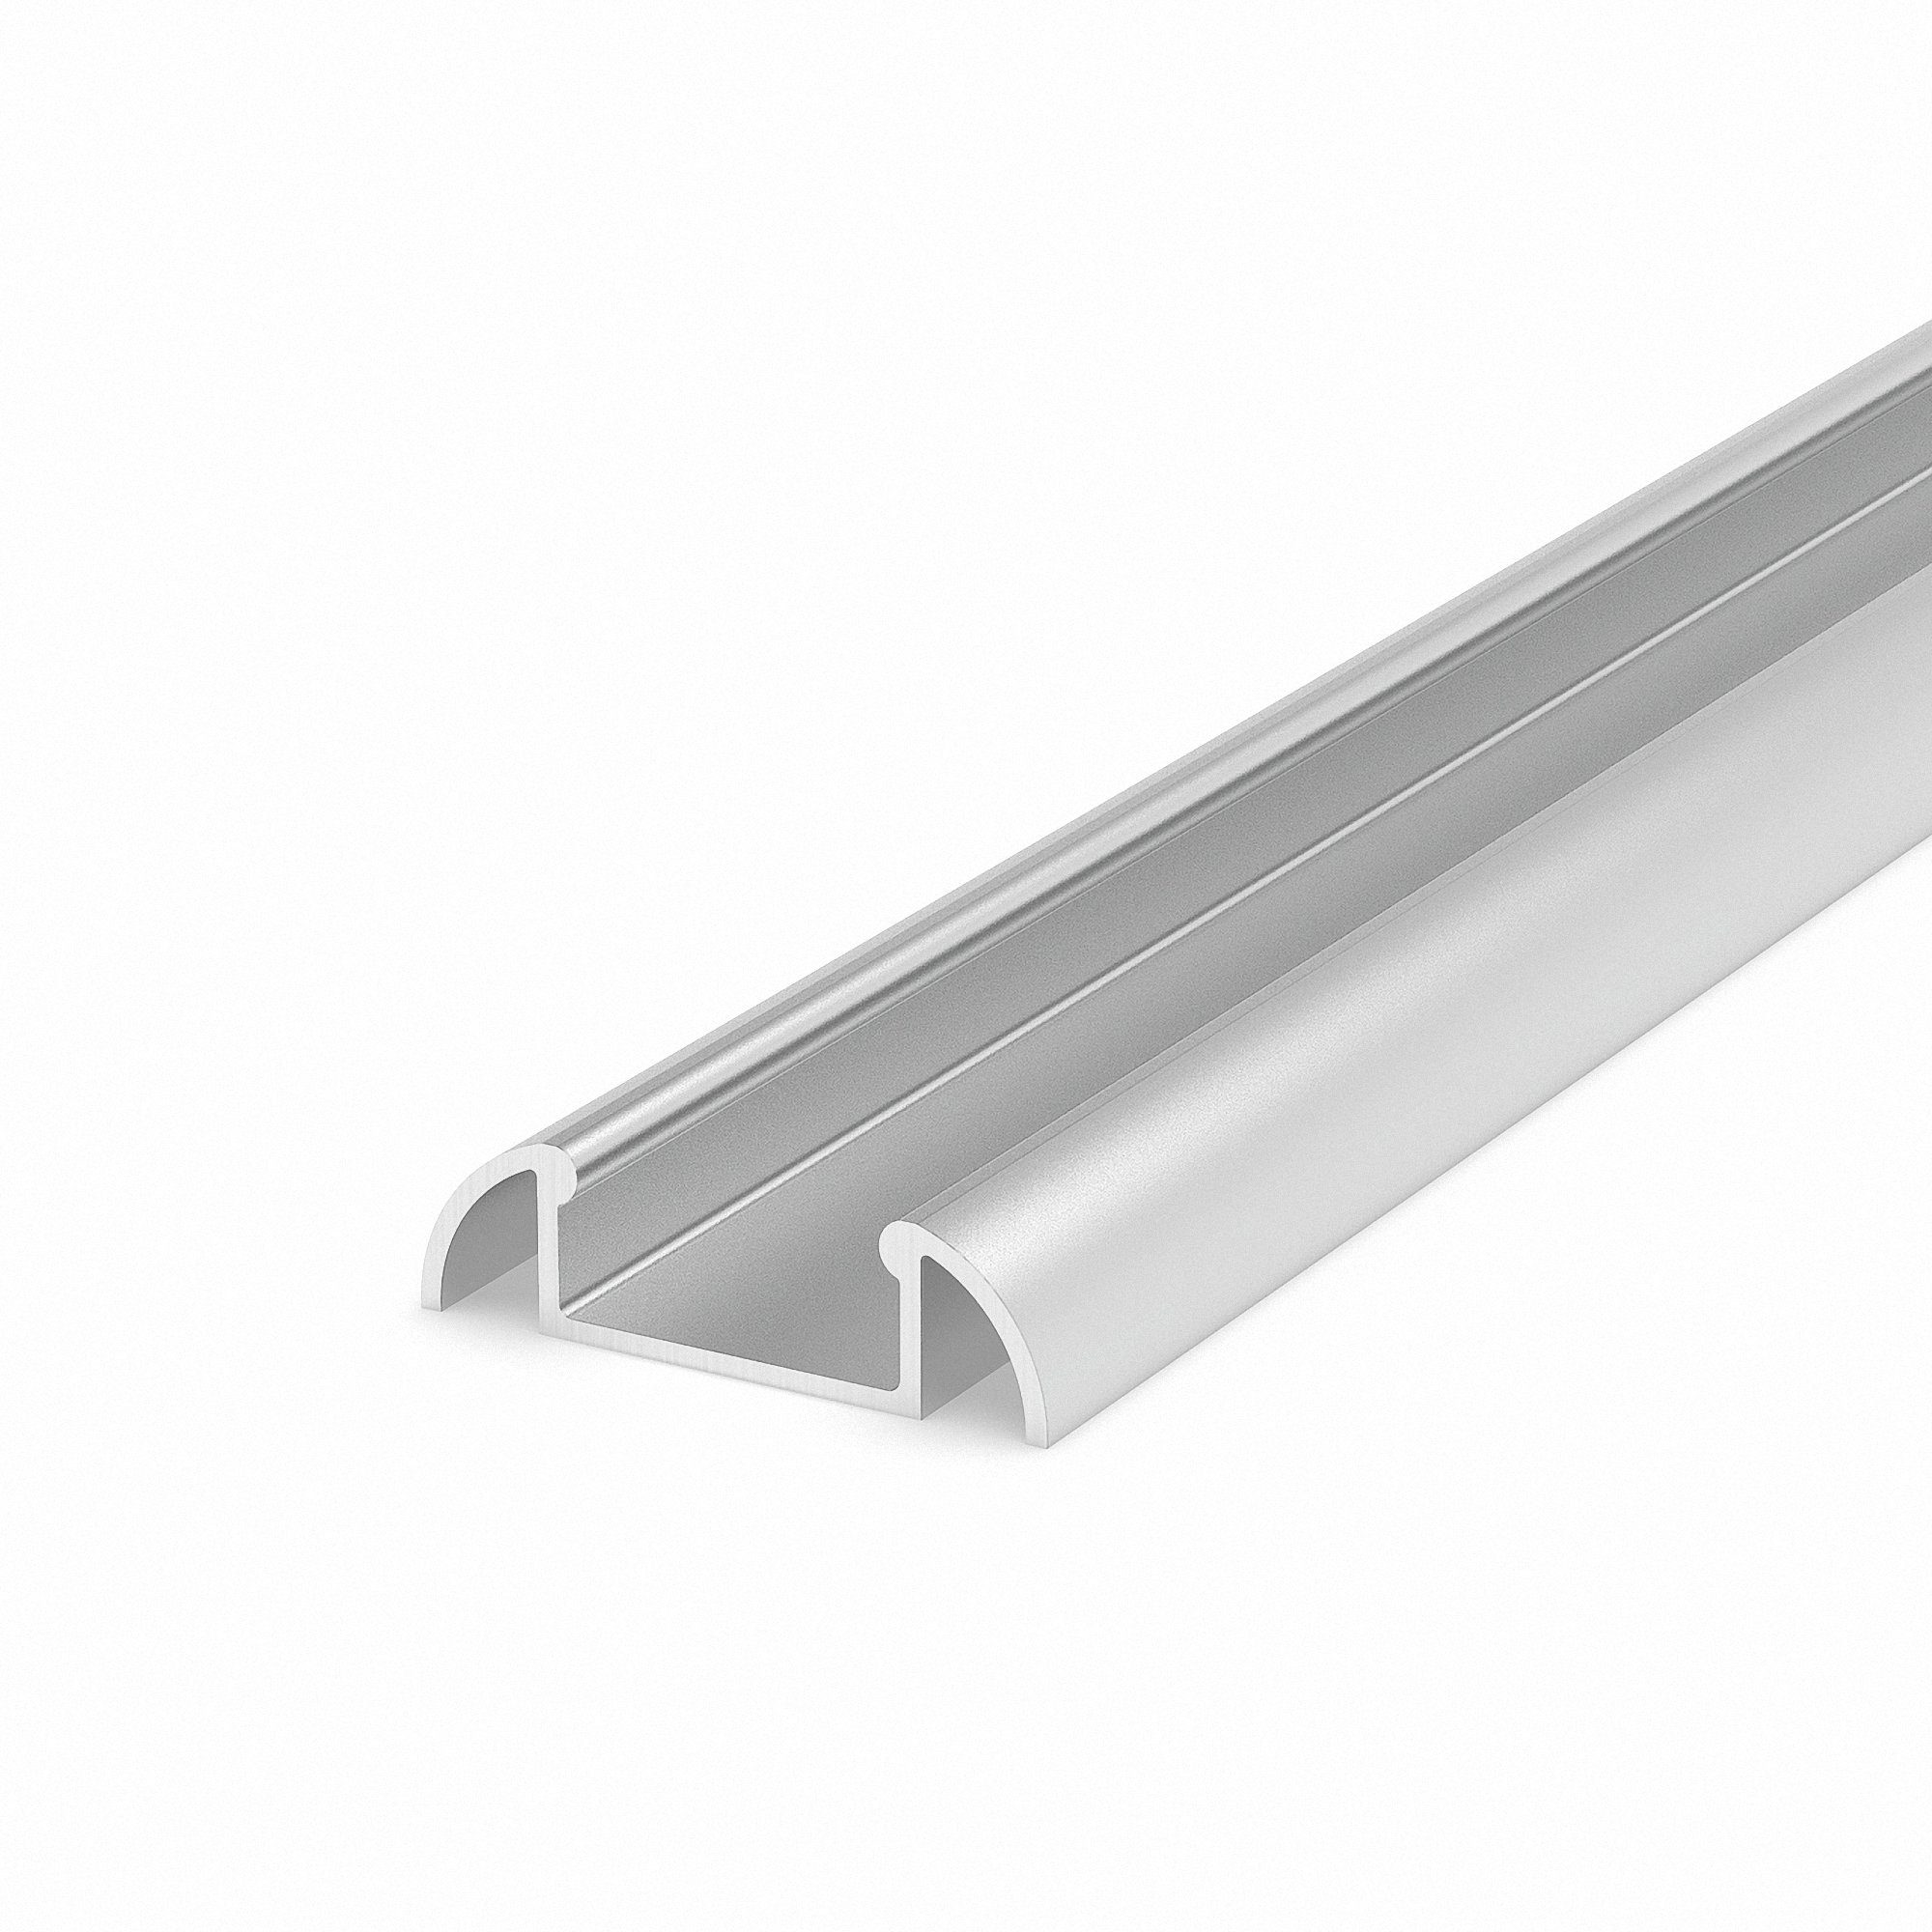 Mextronic LED-Stripe-Profil in silber M2-1 100CM ohne Abdeckung für Streifen bis 13,4mm Breite